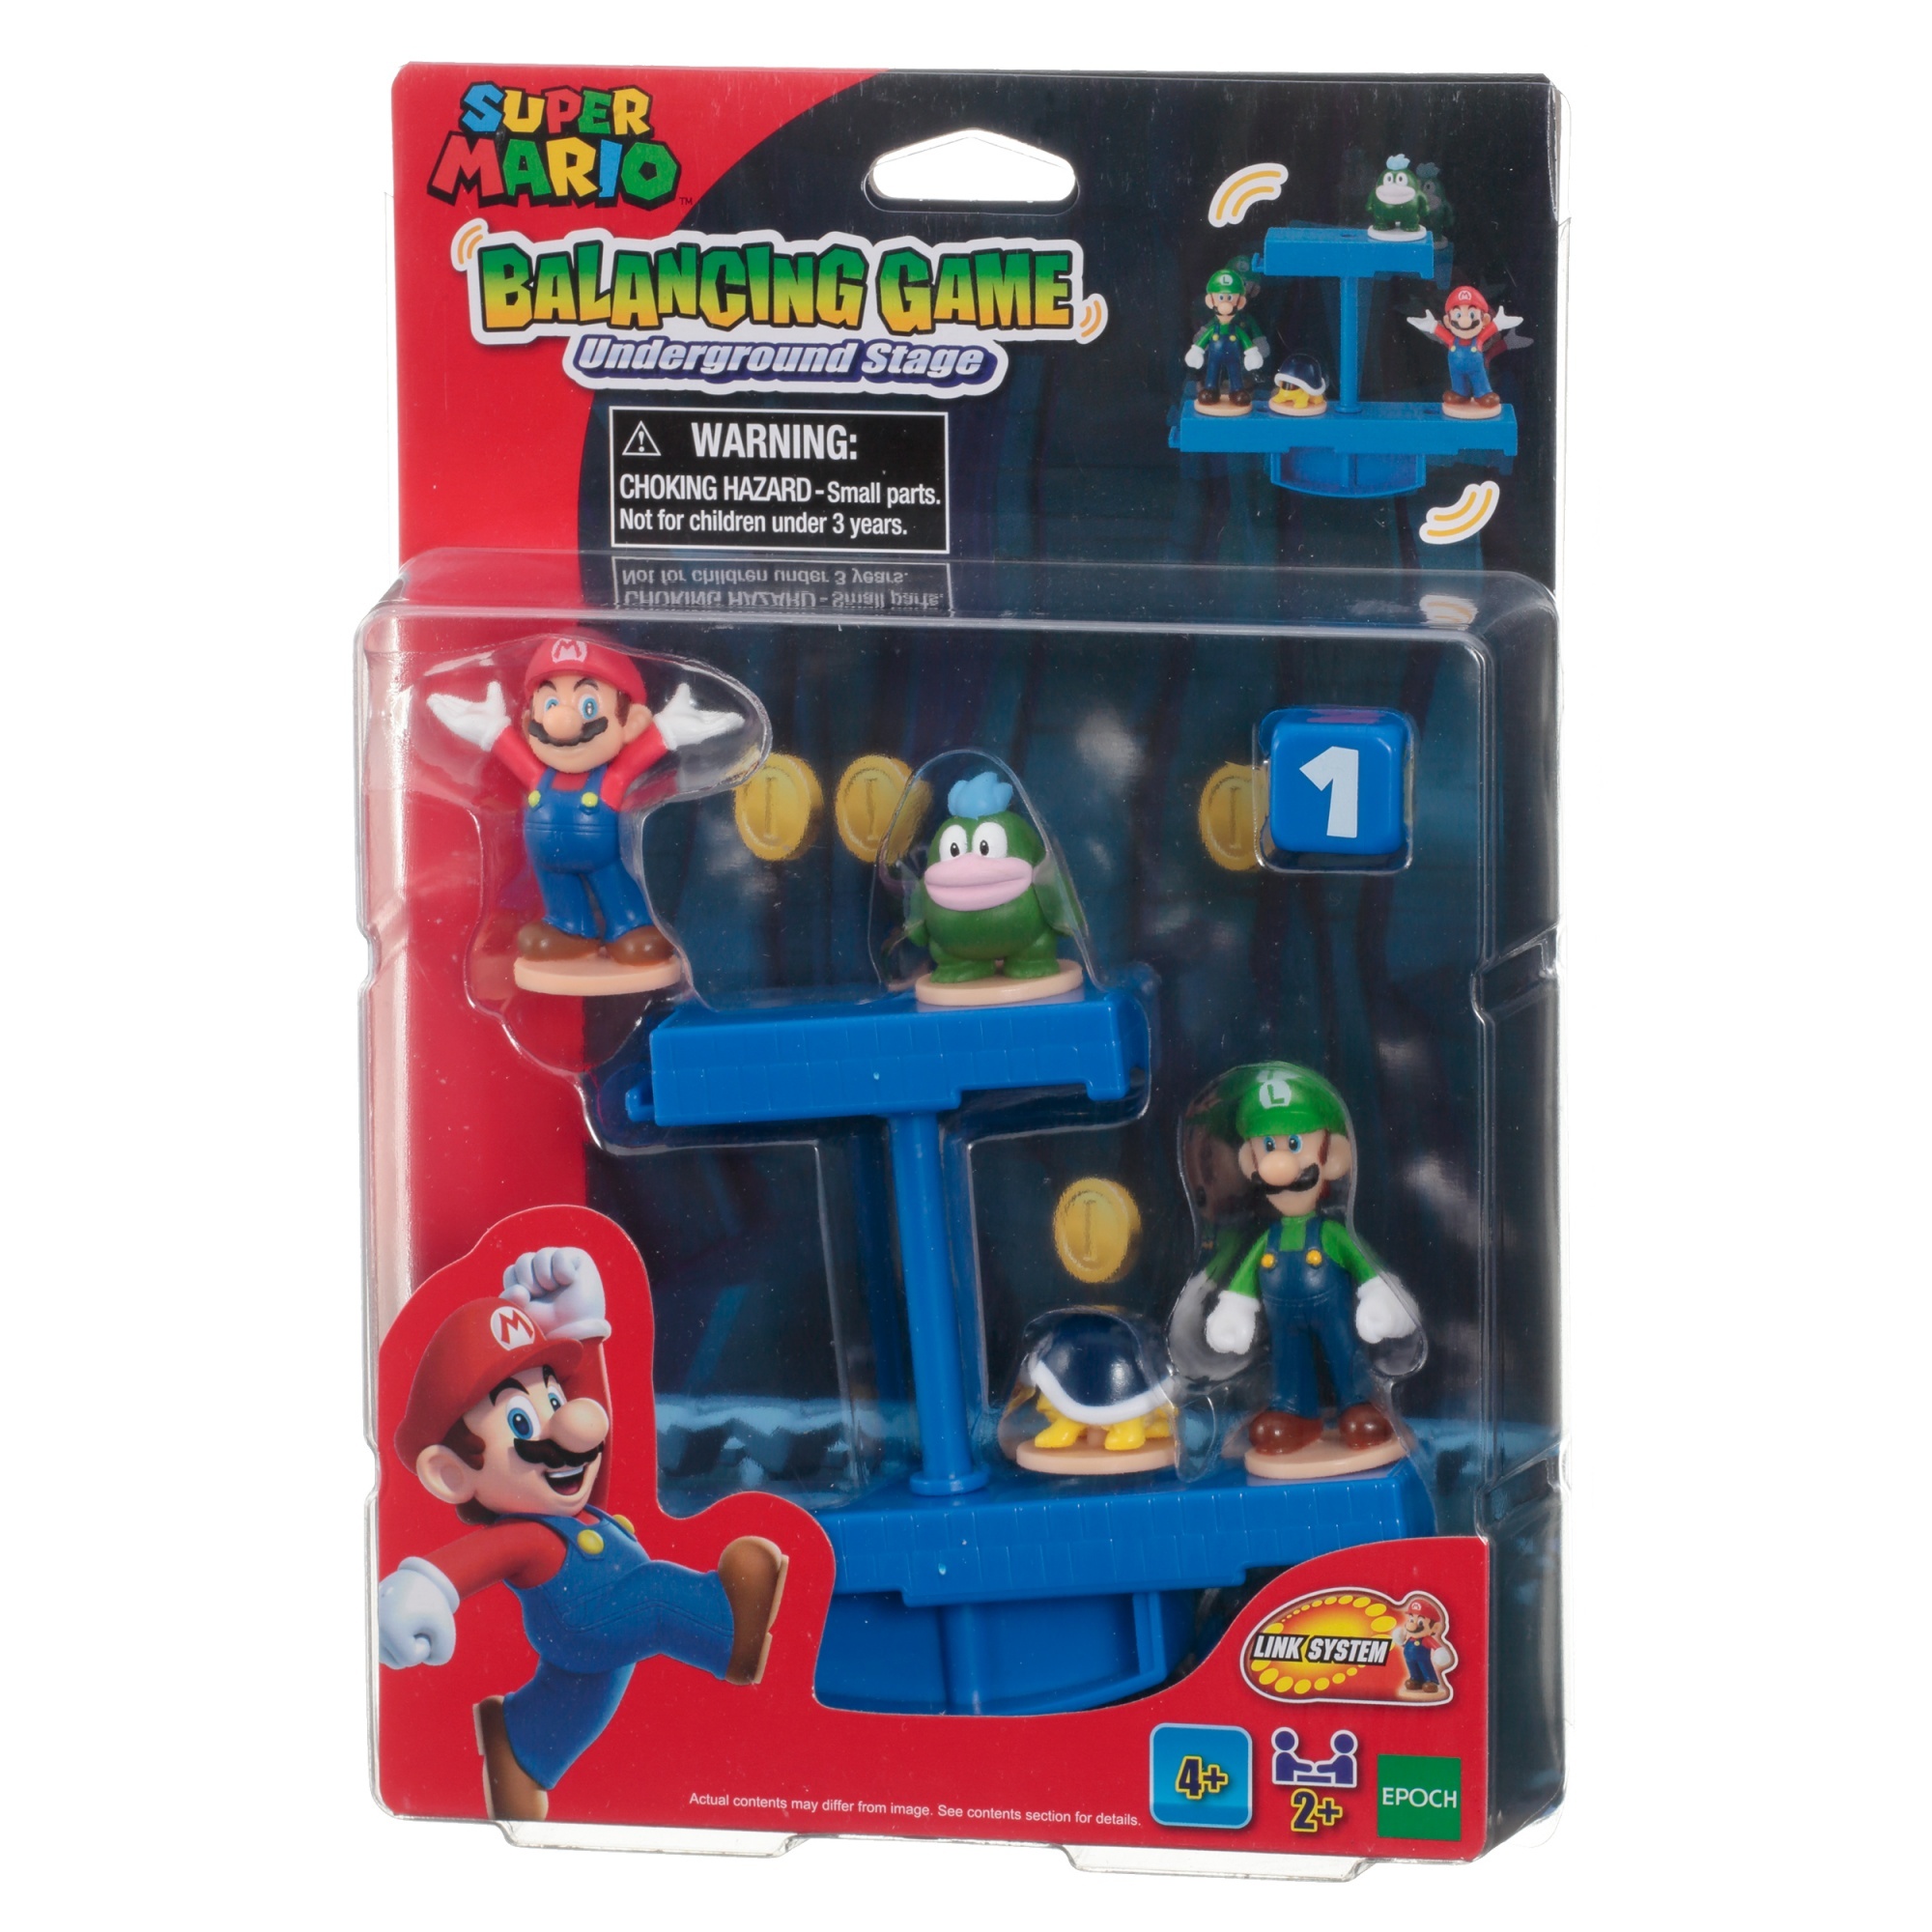 EPOCH Super Mario Balancing Game Mario/Luigi